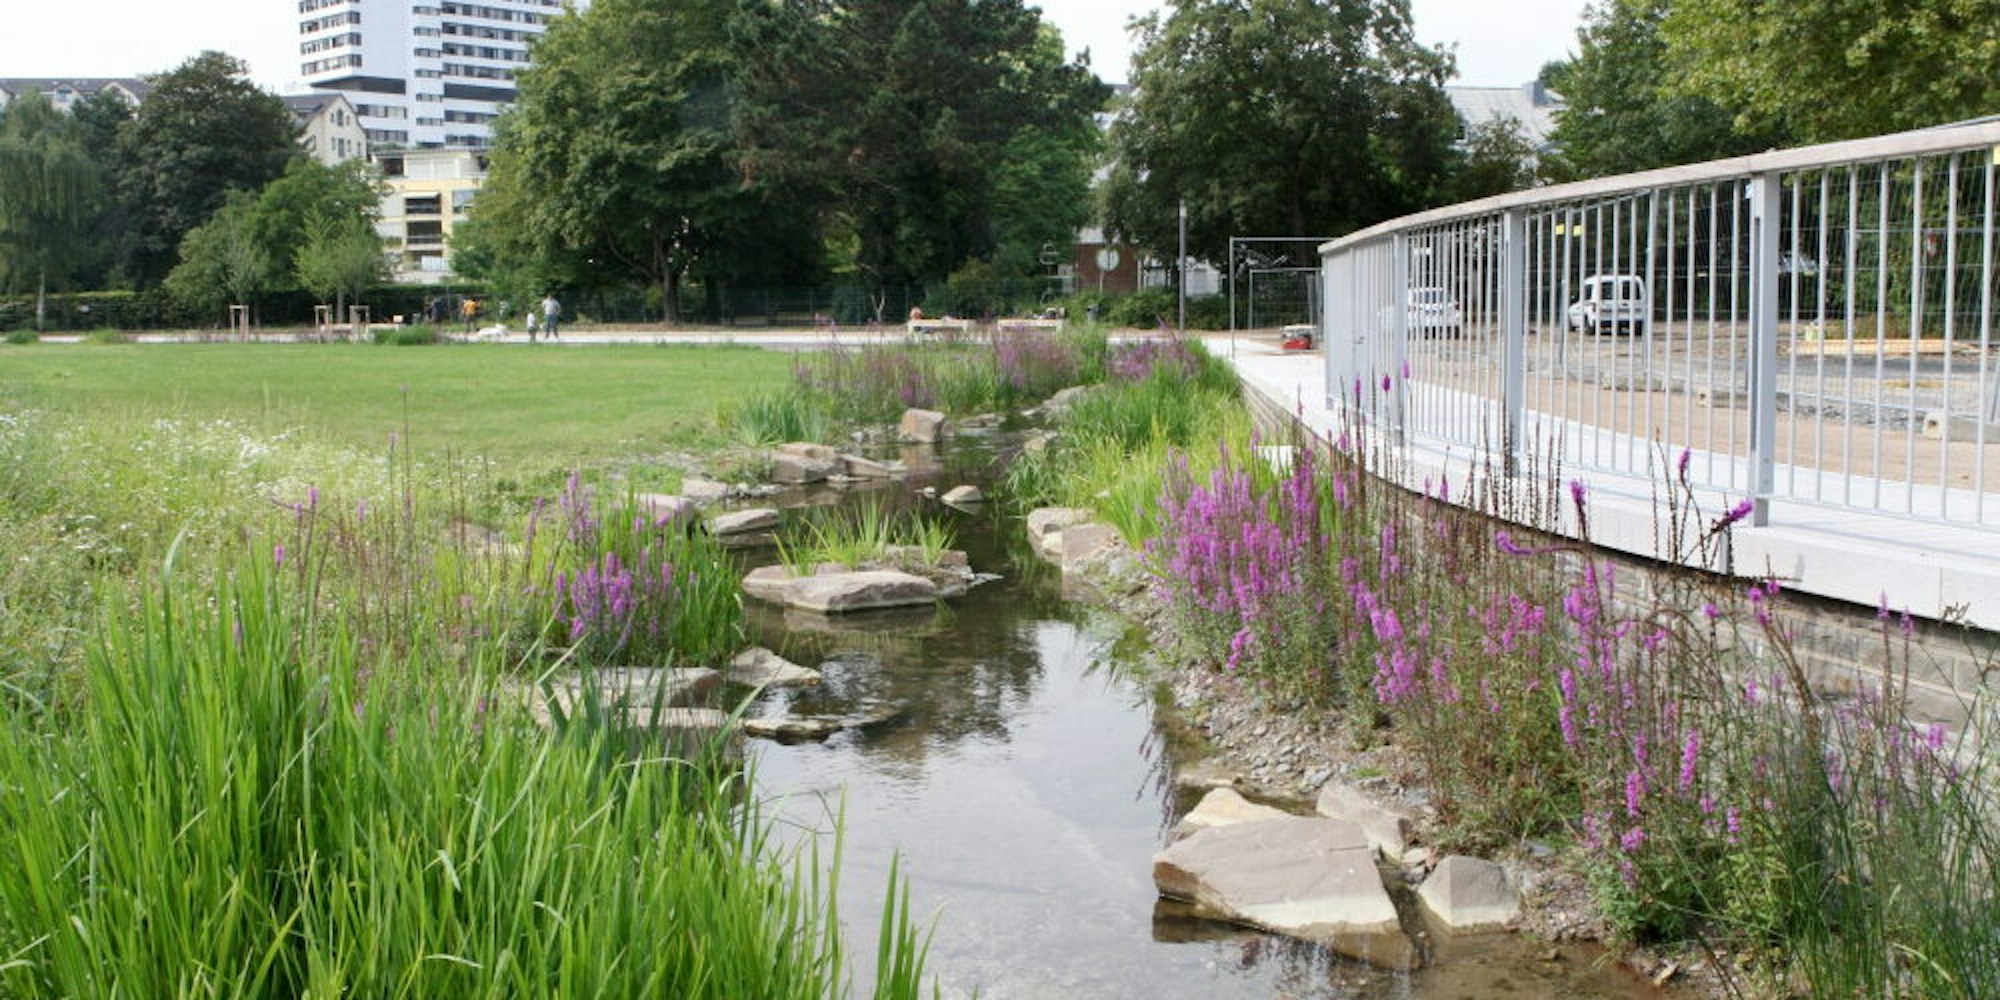 Statt des Forumparks prüft die Stadtverwaltung nun, ob im Buchmühlenpark die Anlage eines Boule-Platzes möglich ist.